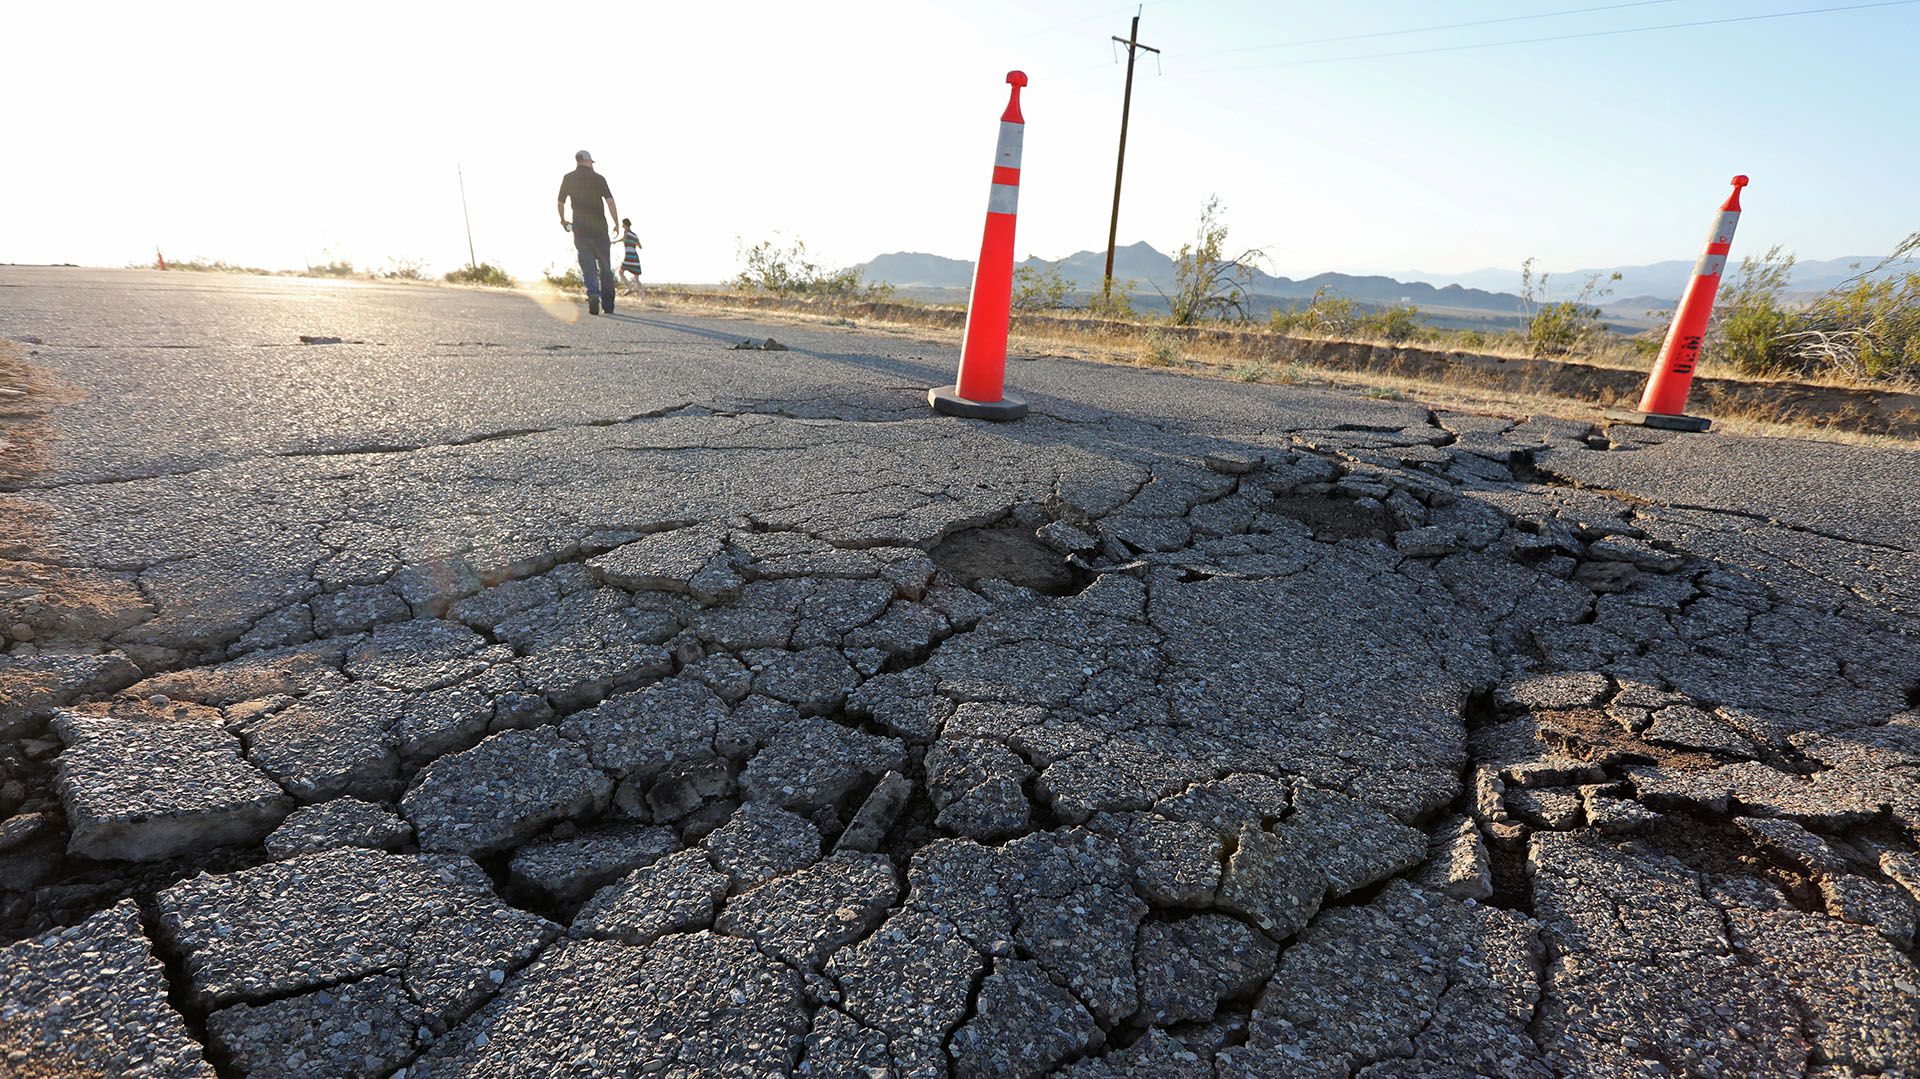 Estos terremotos ocurridos en las últimas horas son los de mayor magnitud registrados en los últimos 20 años en el sur de California desde el de 7,1 de 1999 conocido como Hector Mine (REUTERS/David McNew)